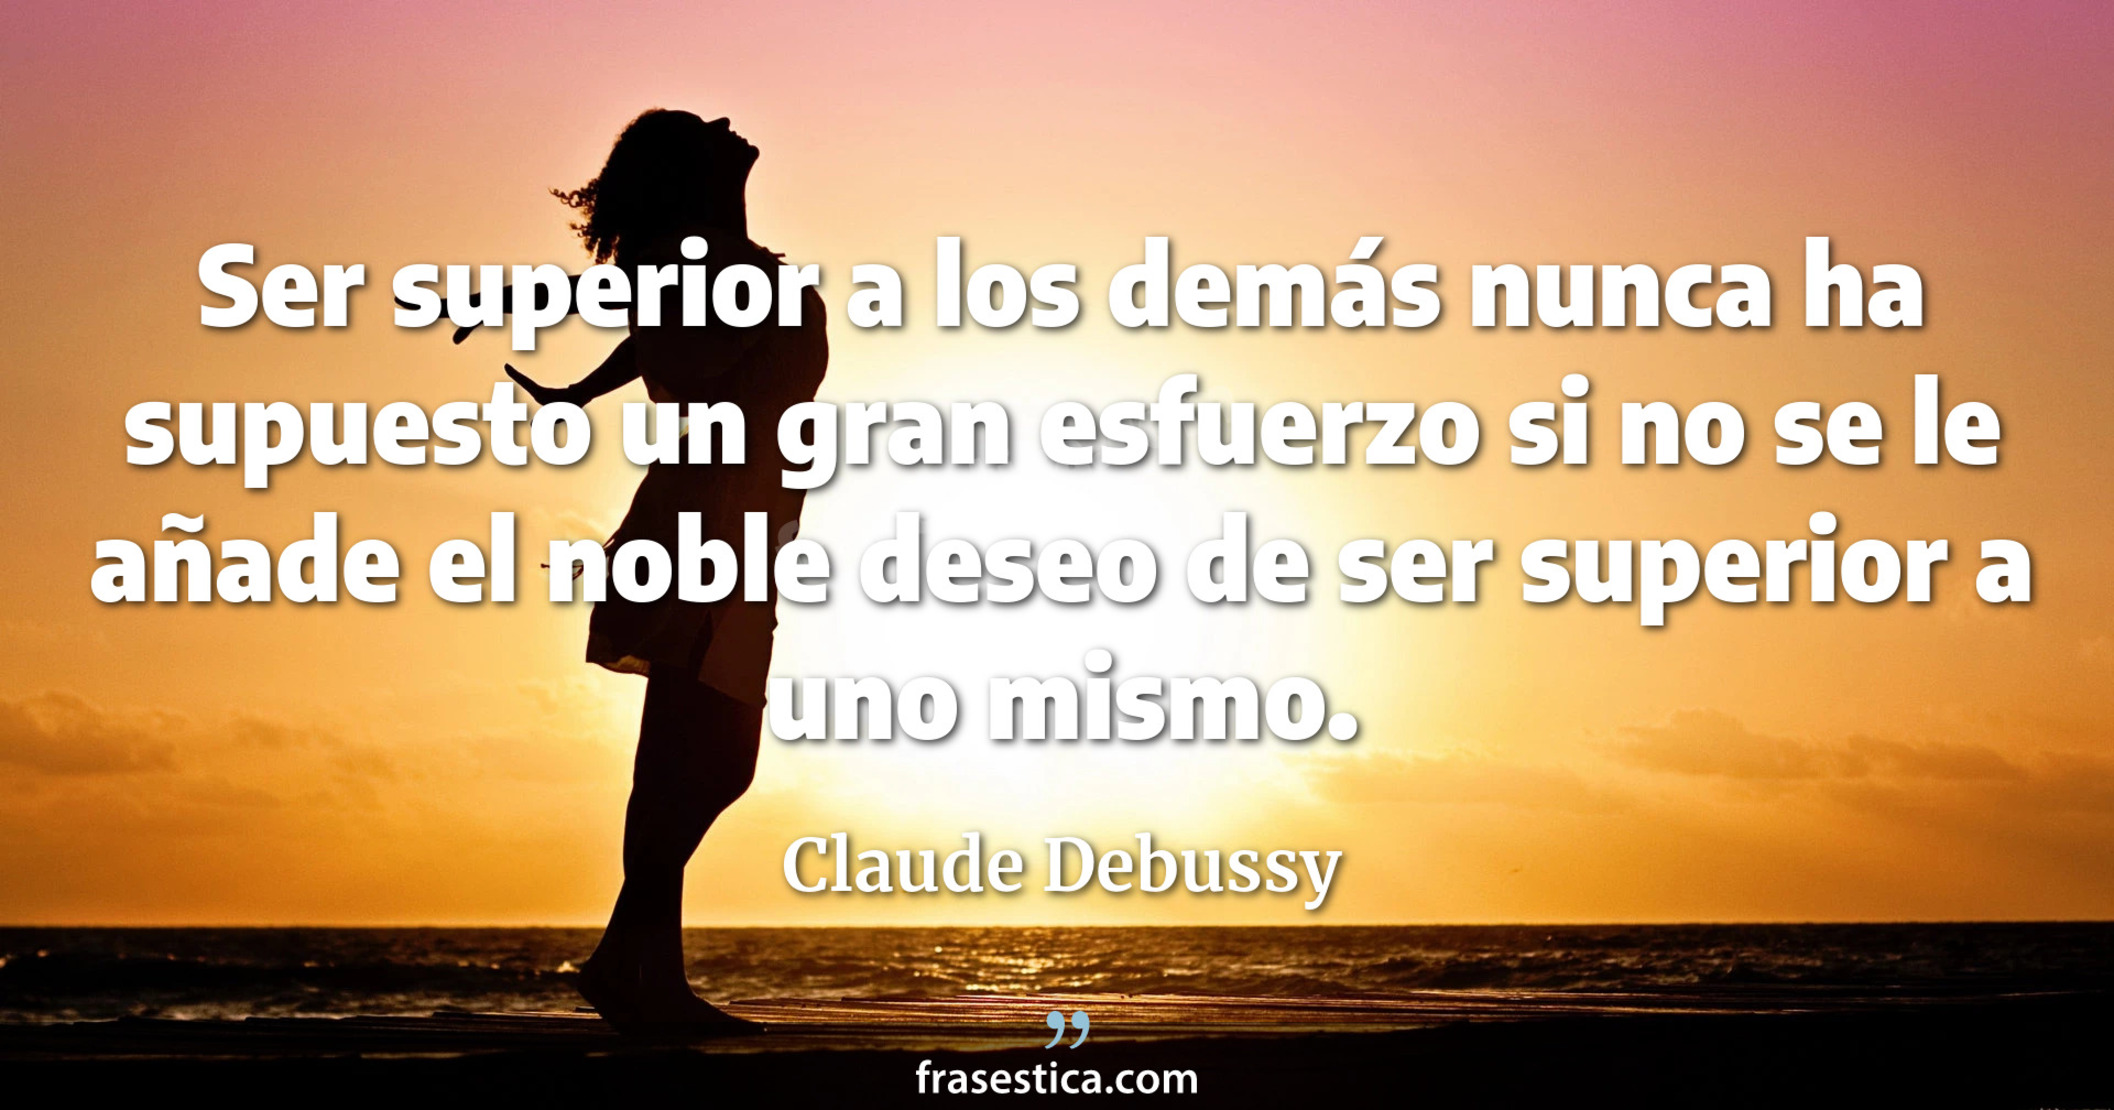 Ser superior a los demás nunca ha supuesto un gran esfuerzo si no se le añade el noble deseo de ser superior a uno mismo. - Claude Debussy